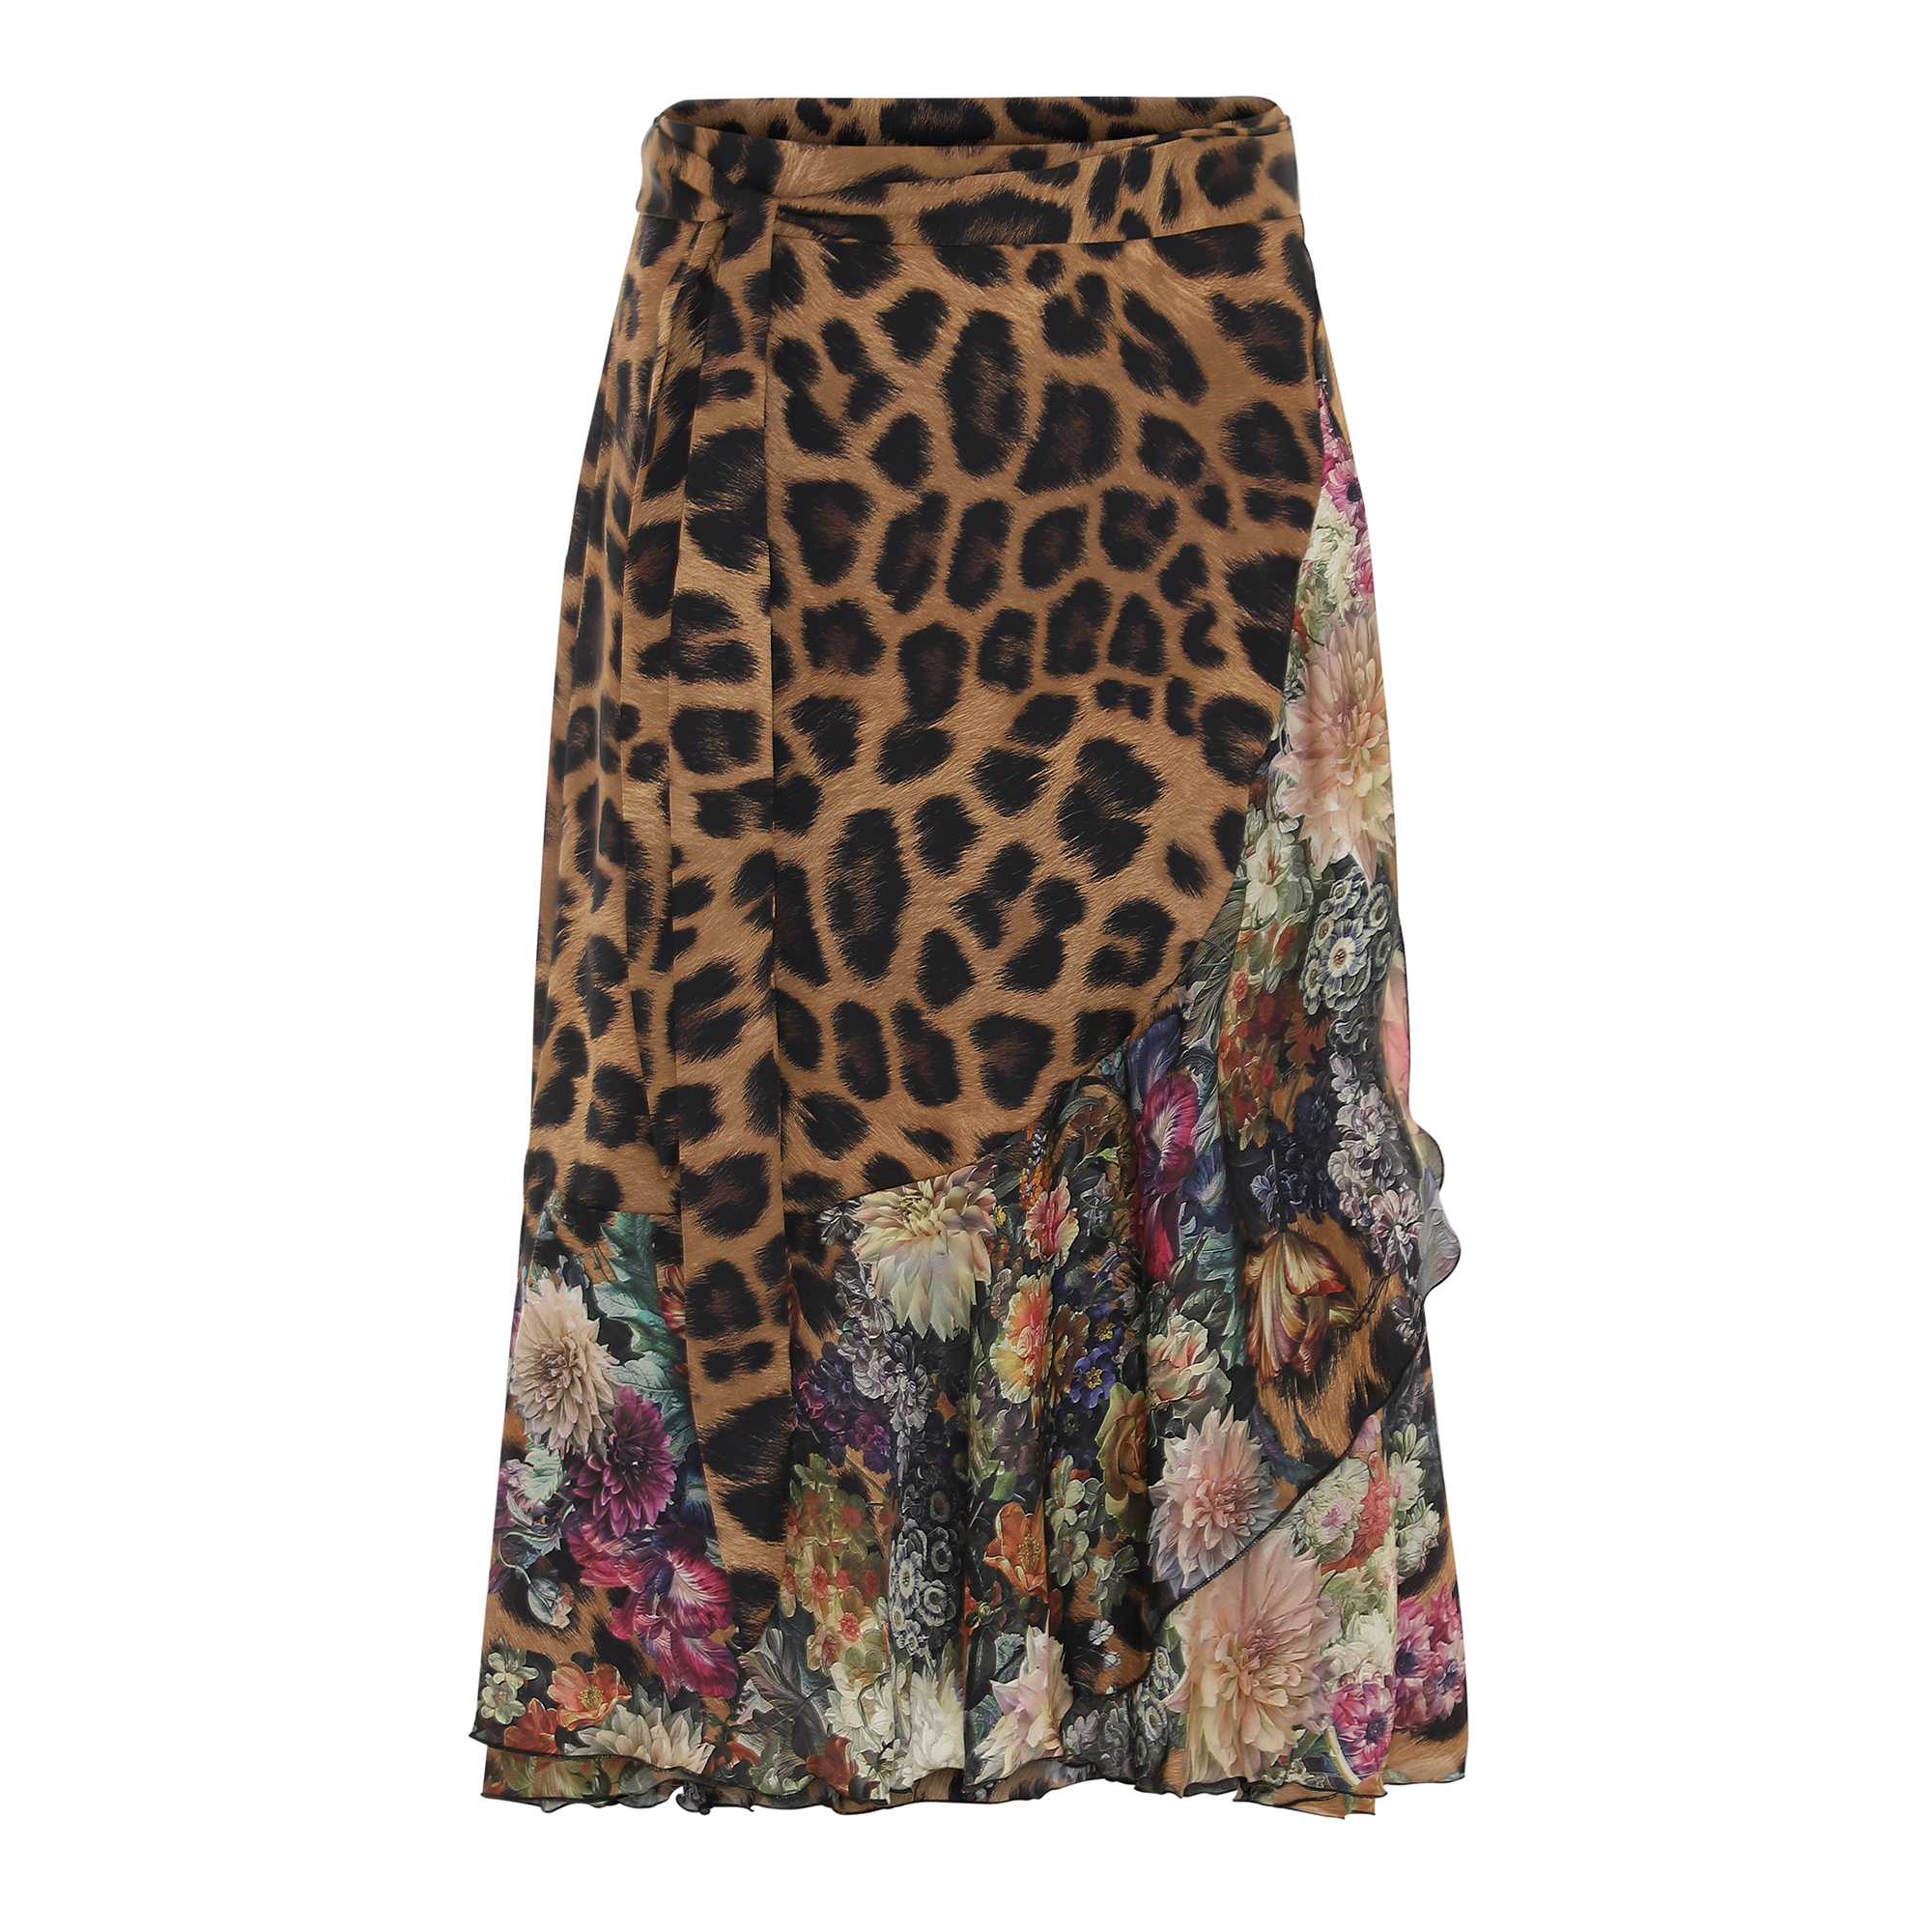 Flower Leopard Ruffle Wrap Skirt (mid 